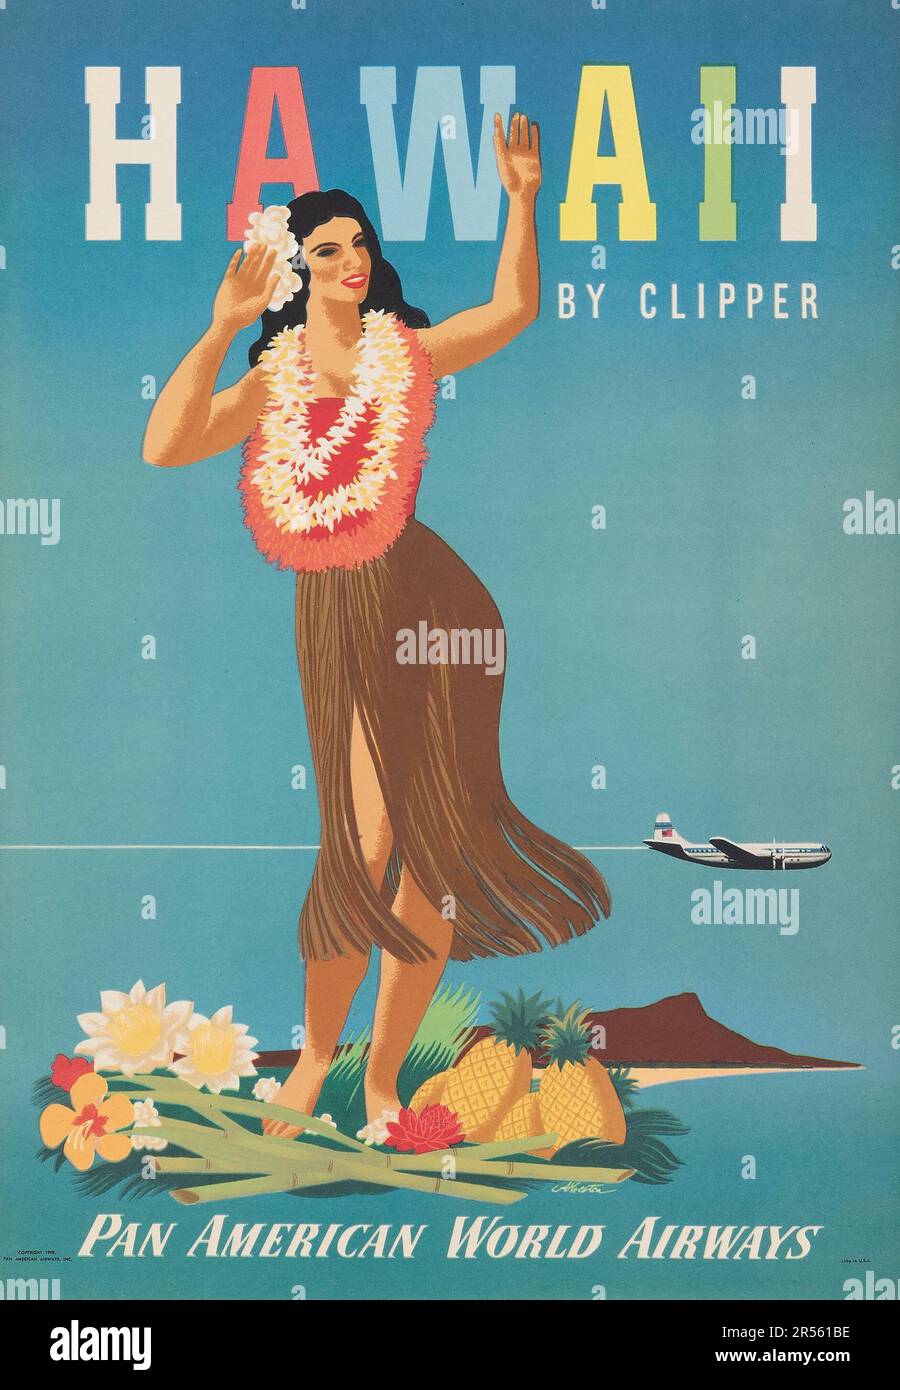 Hawaii by Clipper (Pan American World Airways, 1948) Pan am Travel Poster mit einer hawaiianischen Frau Stockfoto